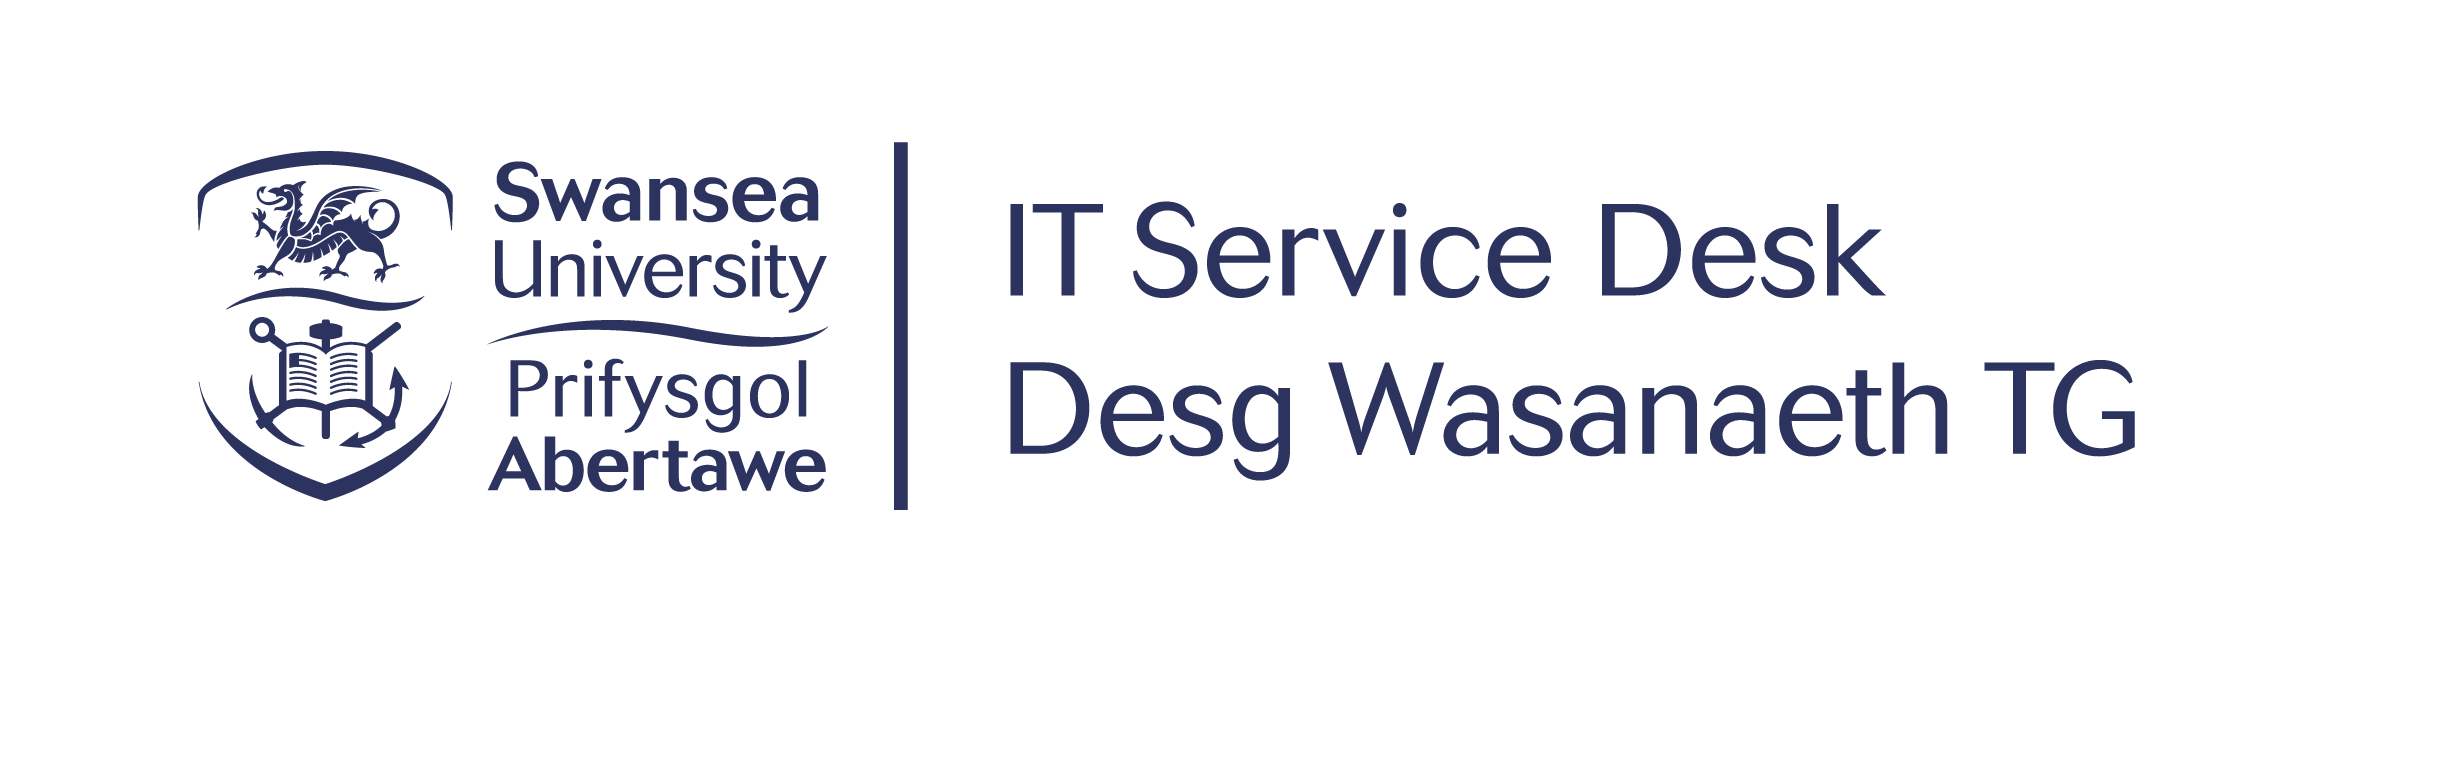 Swansea University IT Service Desk logo